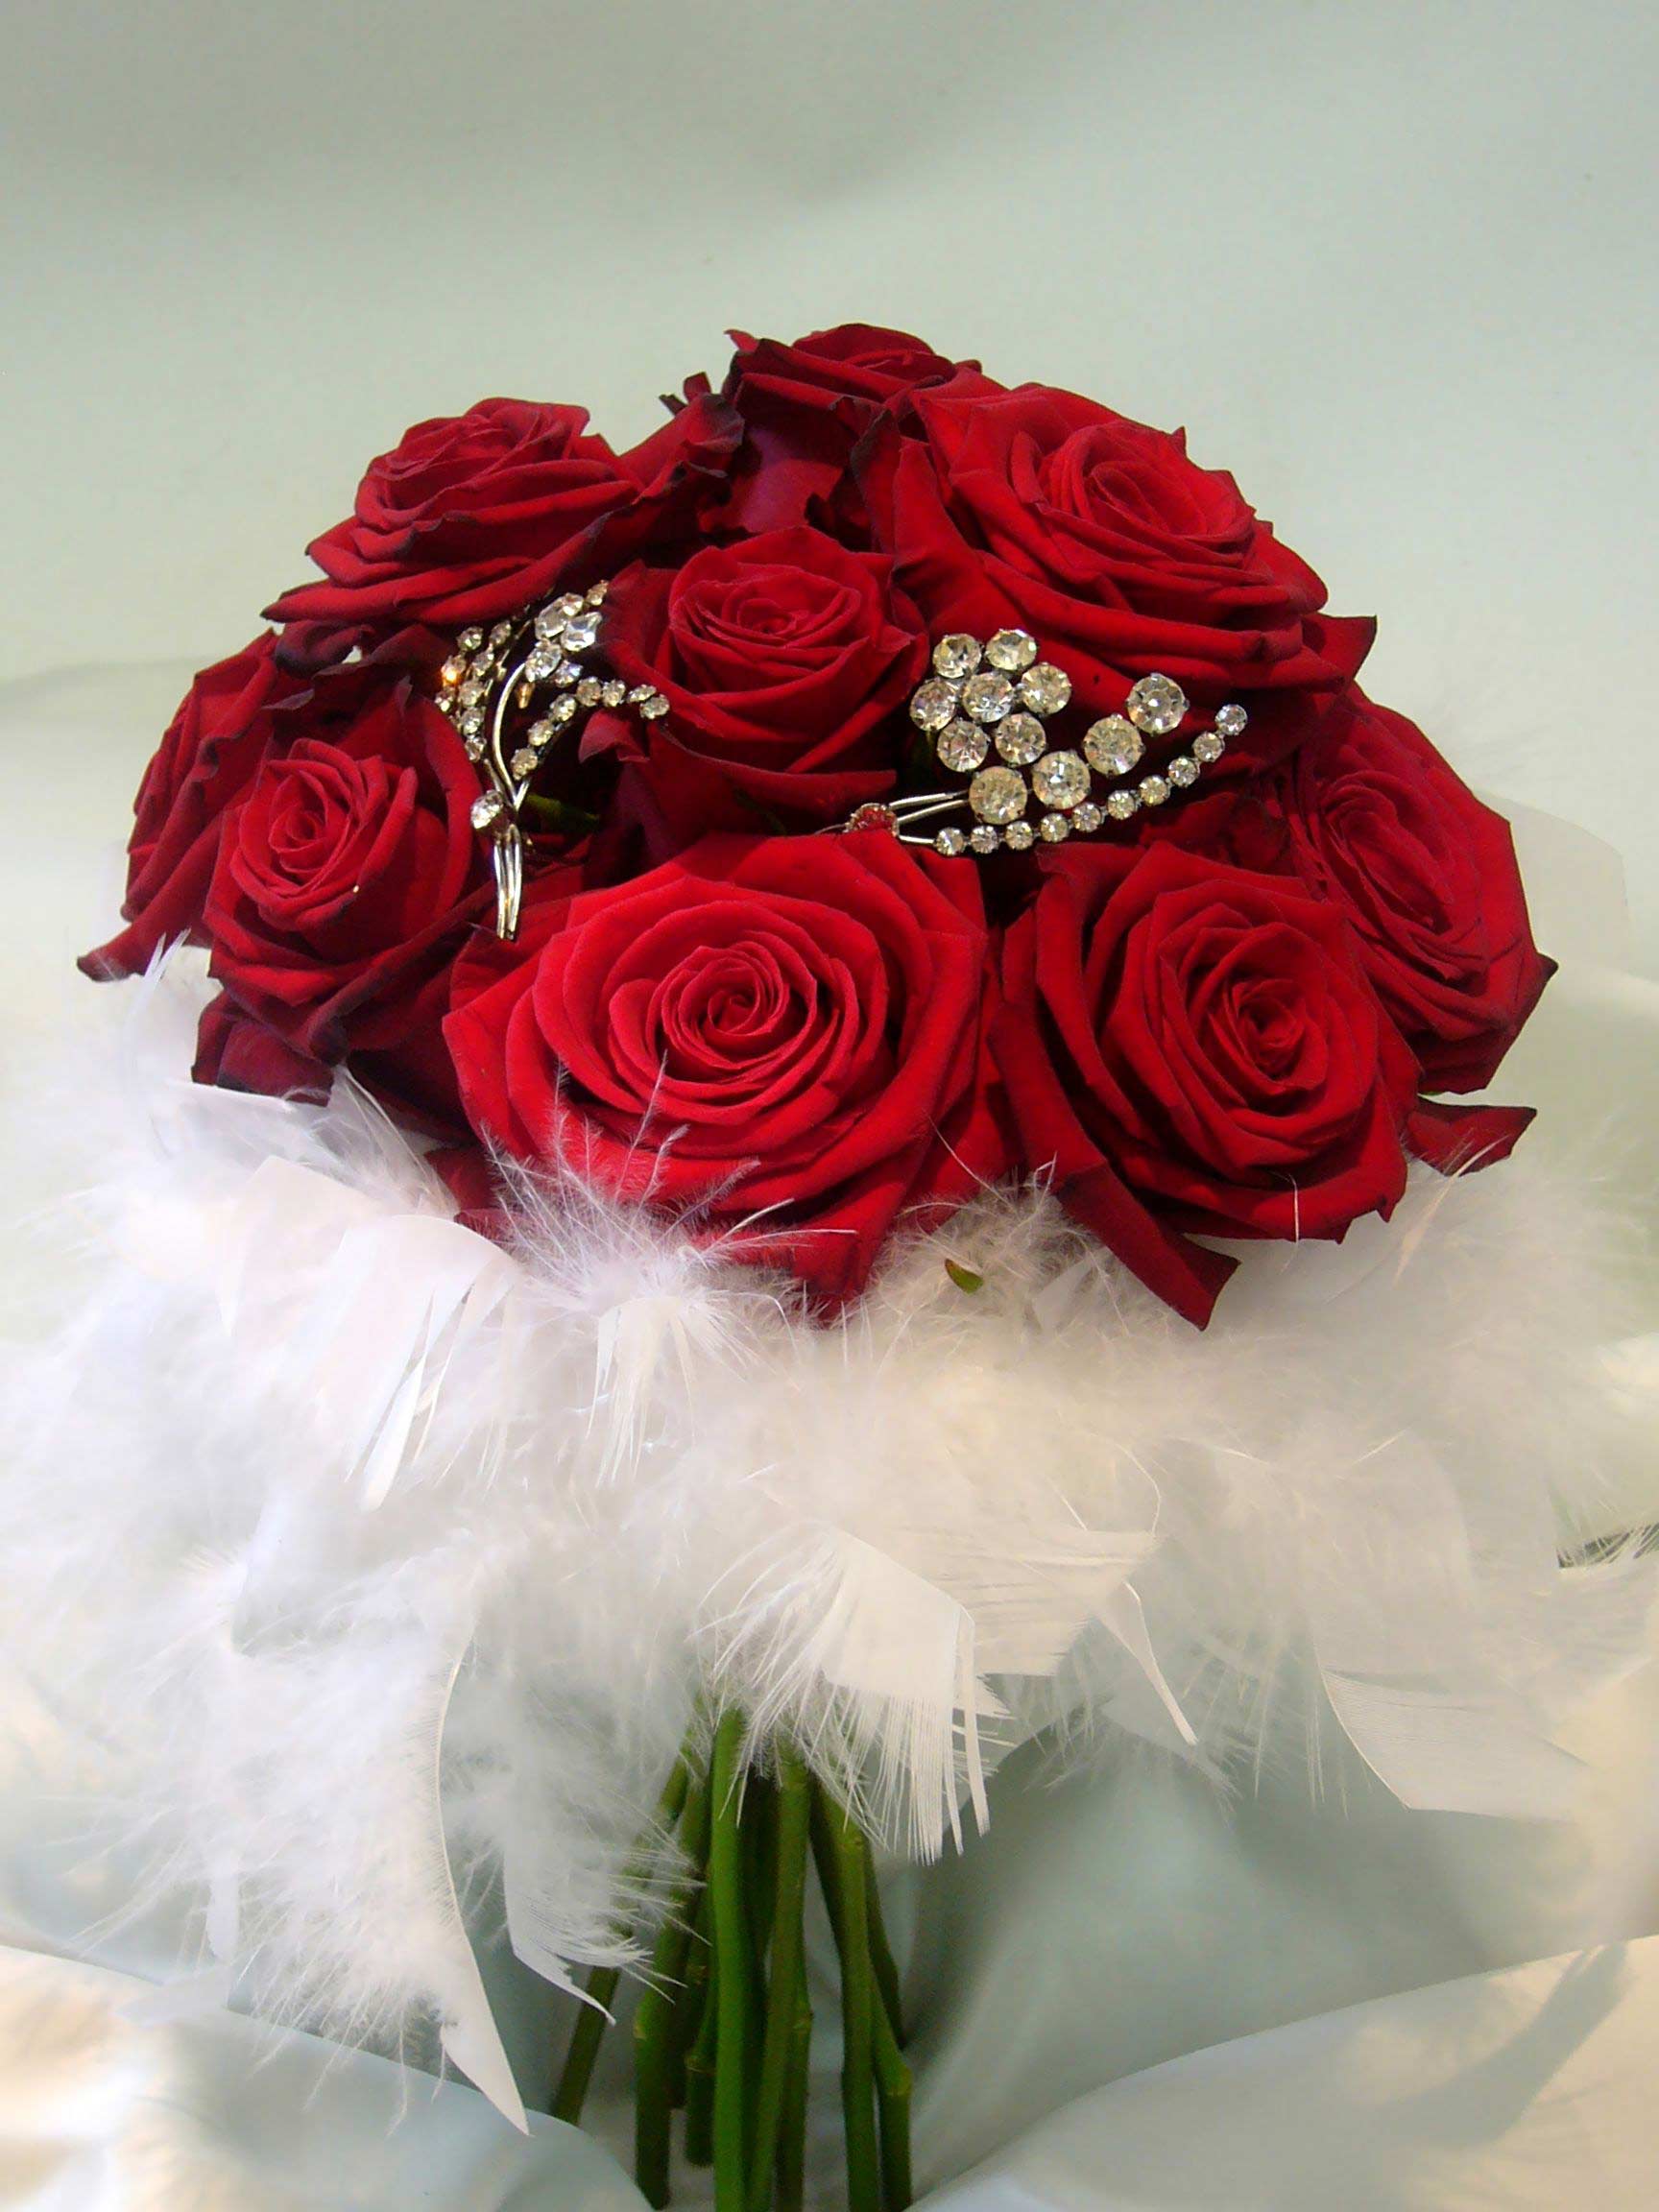 Hoa cưới cầm tay màu đỏ được kết từ hoa hồng và lông vũ